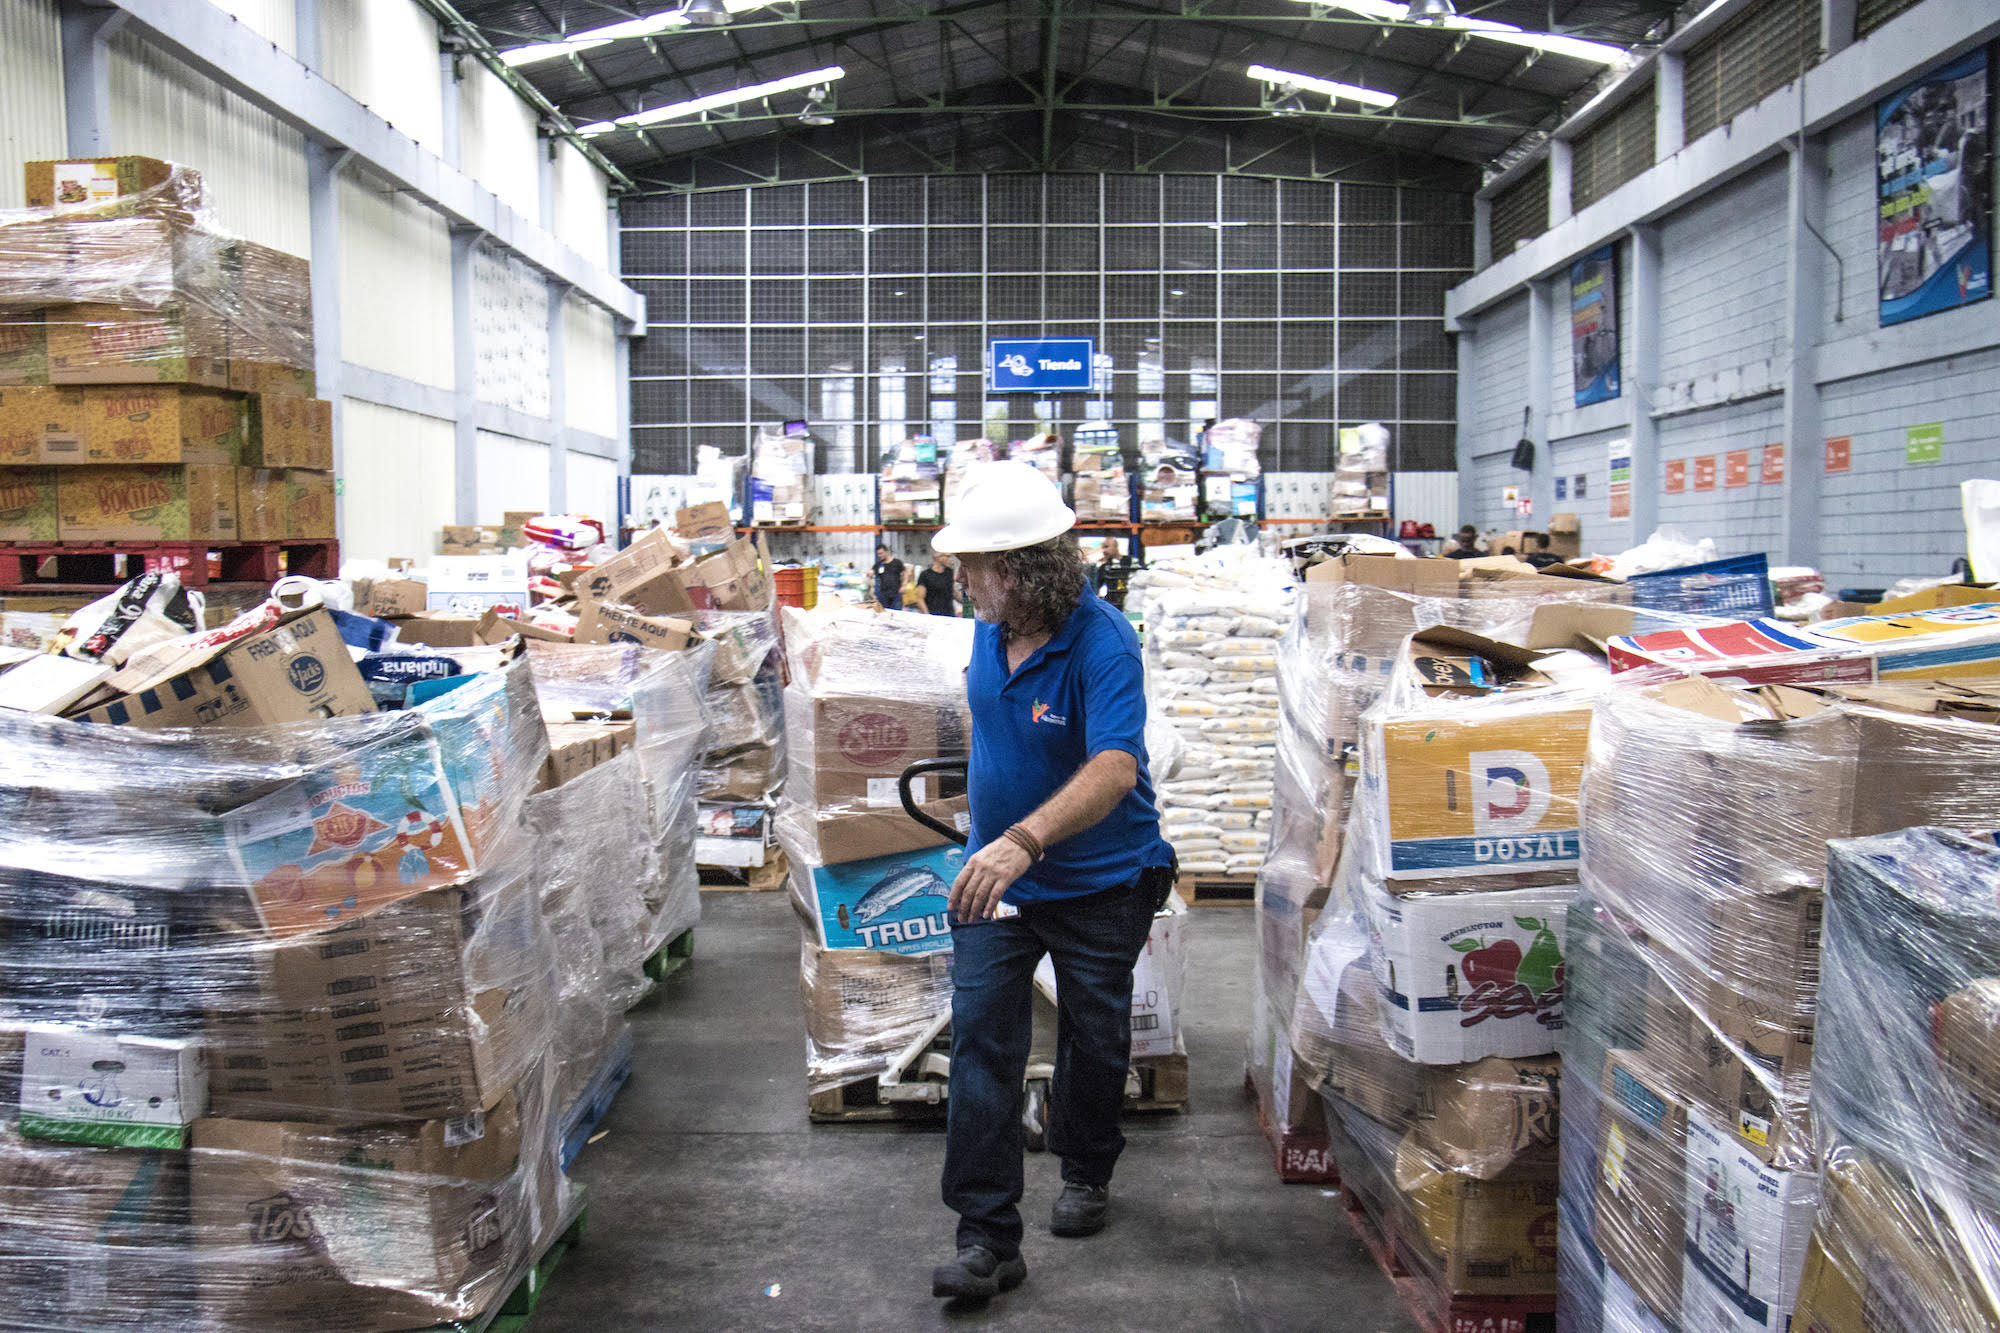 Banco de Alimentos urge donaciones ante aumento de solicitudes de ayuda durante pandemia